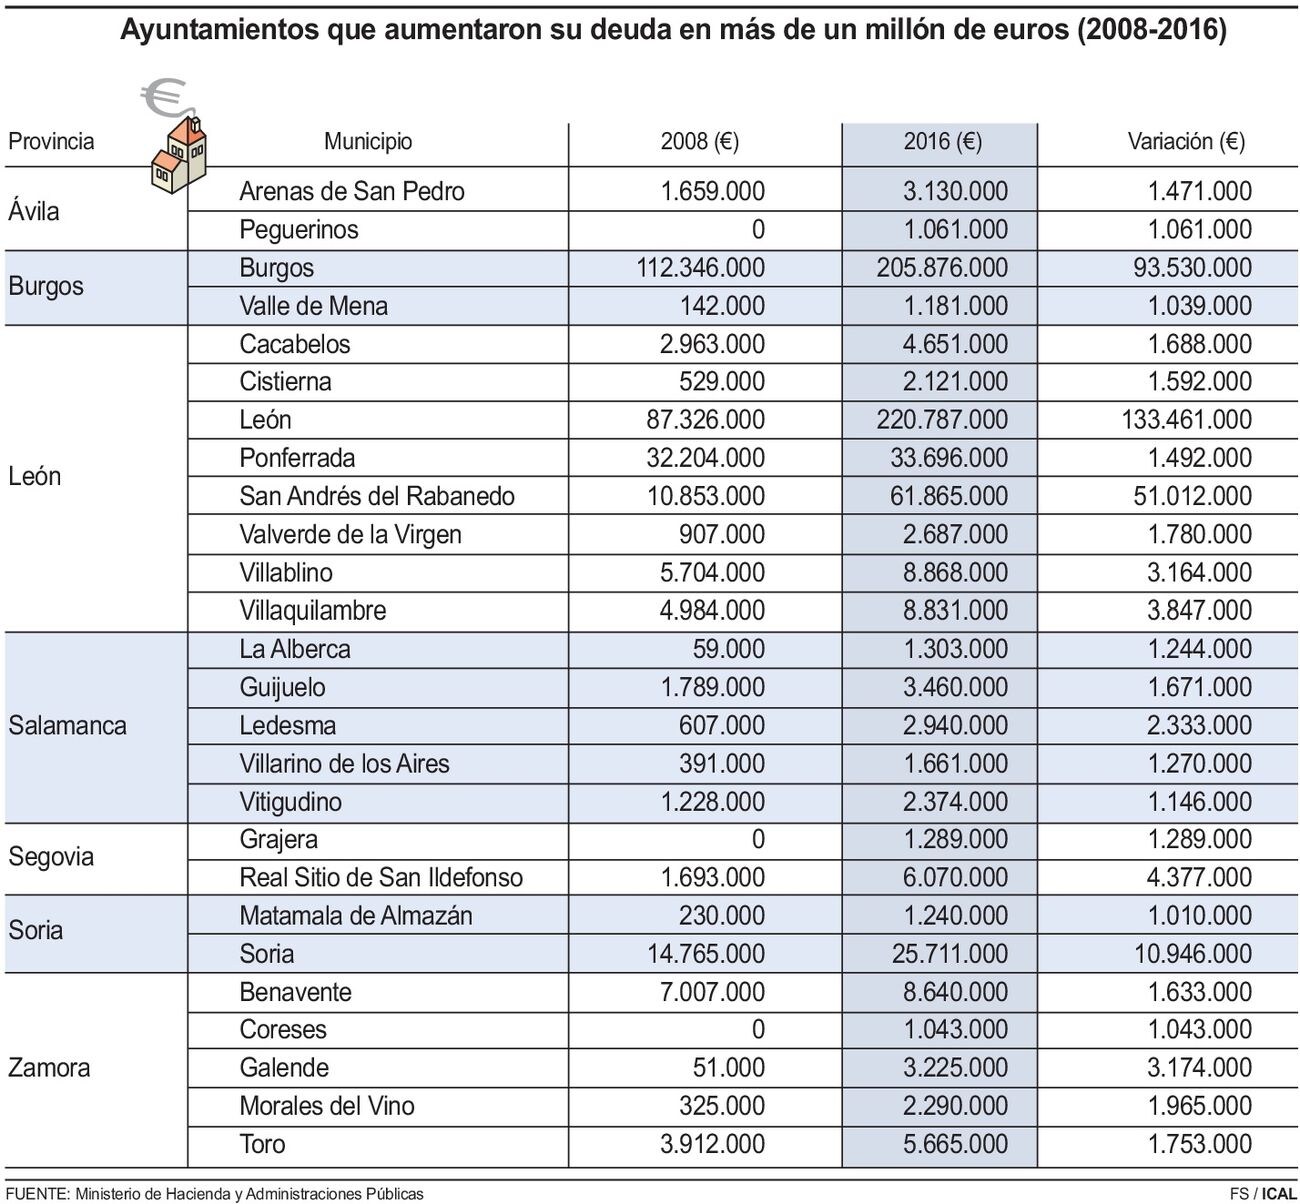 León y San Andrés, a la cabeza en 'deuda viva' al deber 220 y 51 millones de euros a los bancos